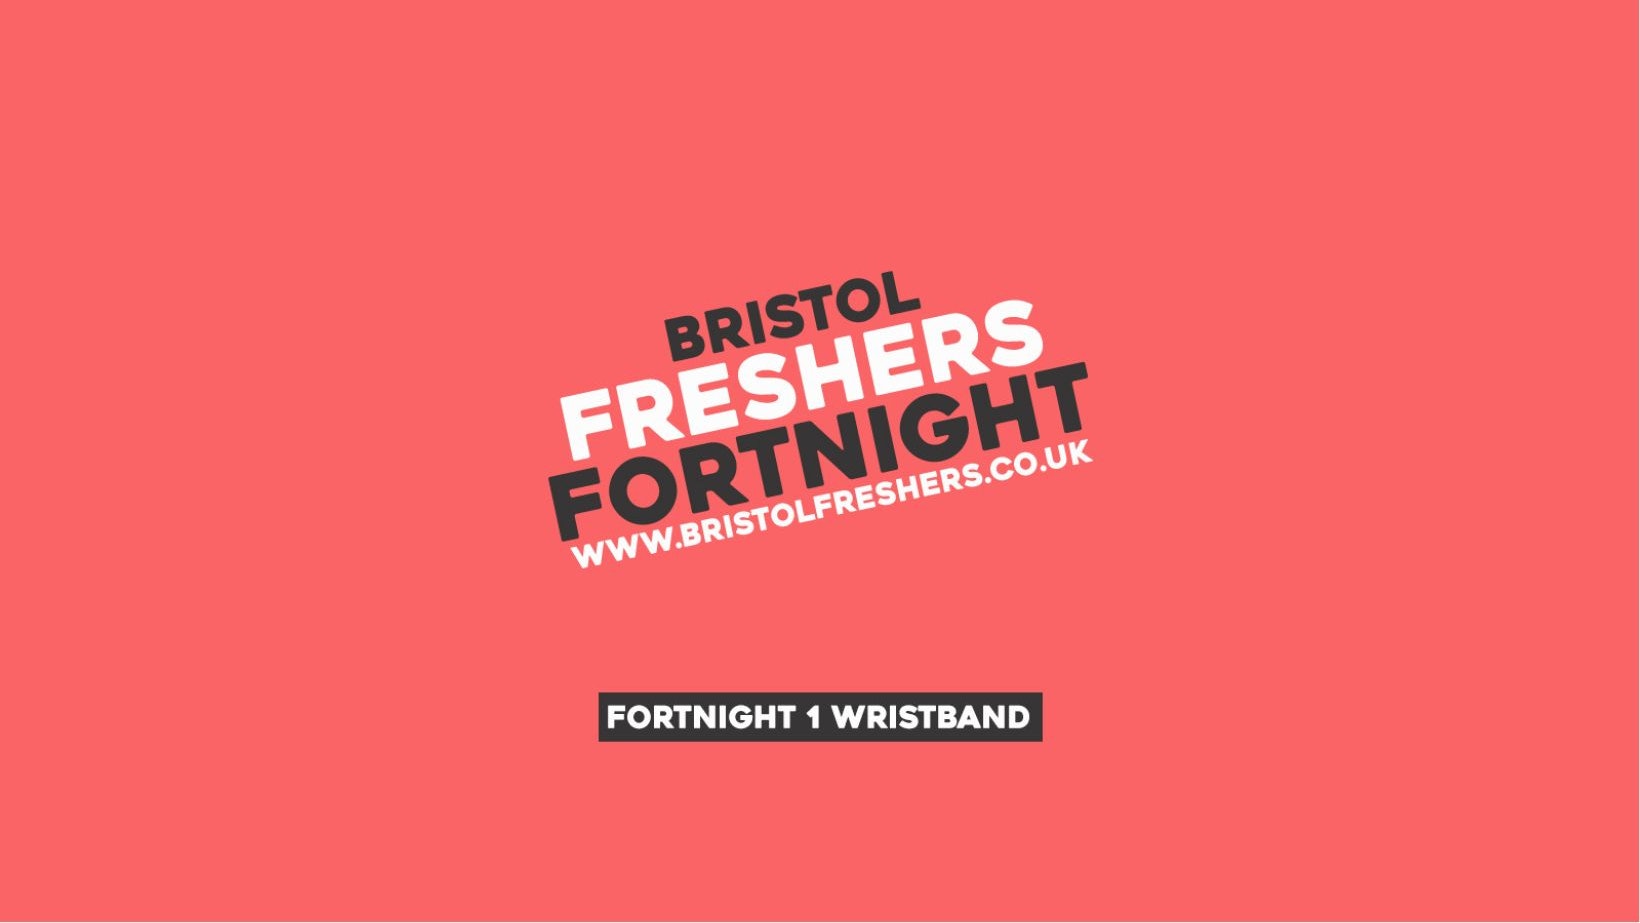 Bristol Freshers 2022 – Fortnight 1